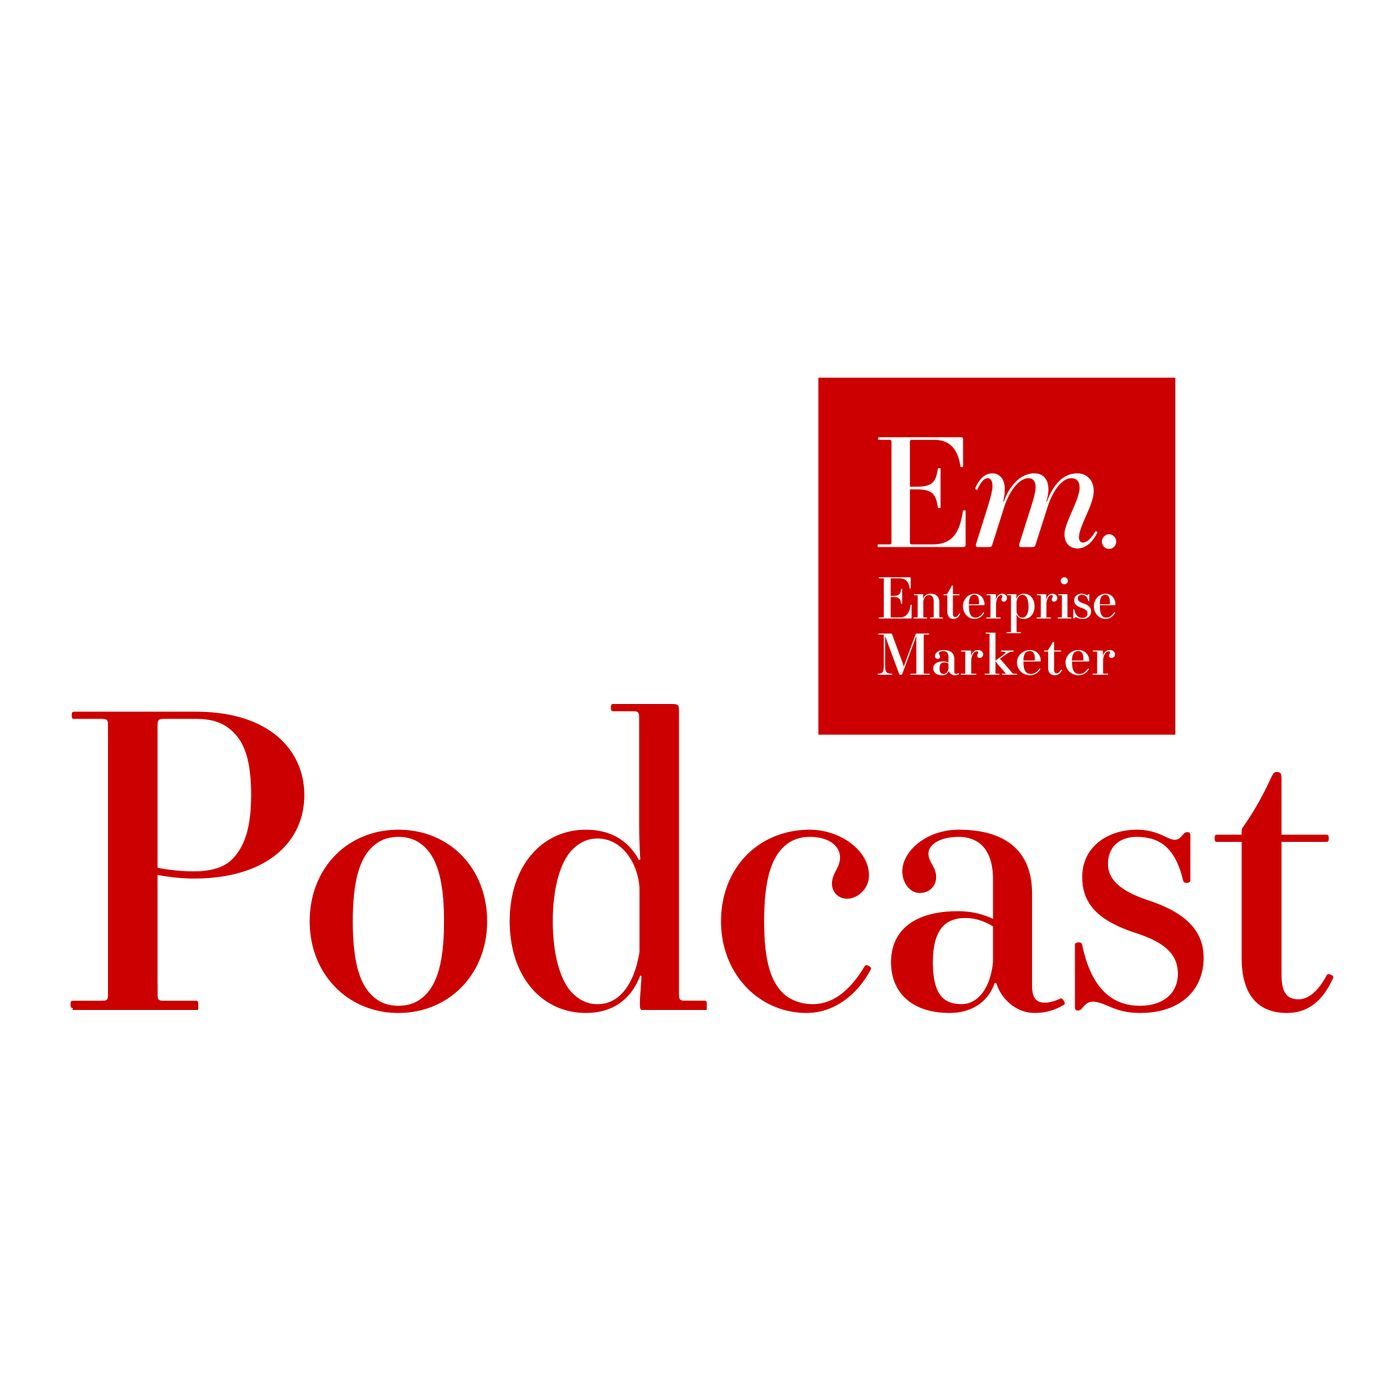 Enterprise Marketer Podcast - Conference